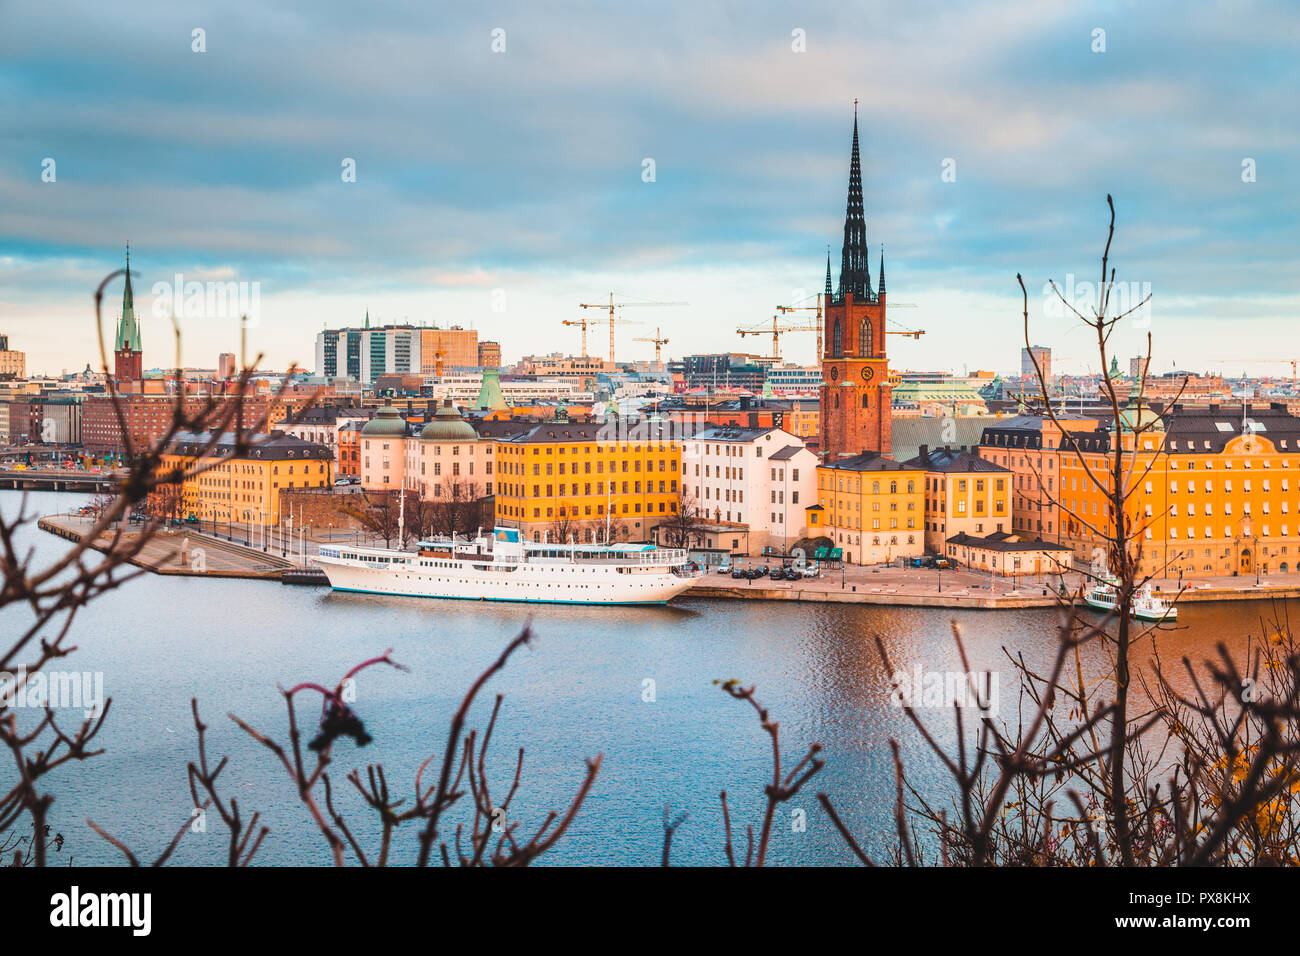 Klassische Ansicht der Stockholmer Innenstadt mit dem berühmten Riddarholmen in Gamla Stan in wunderschönen goldenen Morgenlicht, Södermalm, Stockholm, Schweden Stockfoto